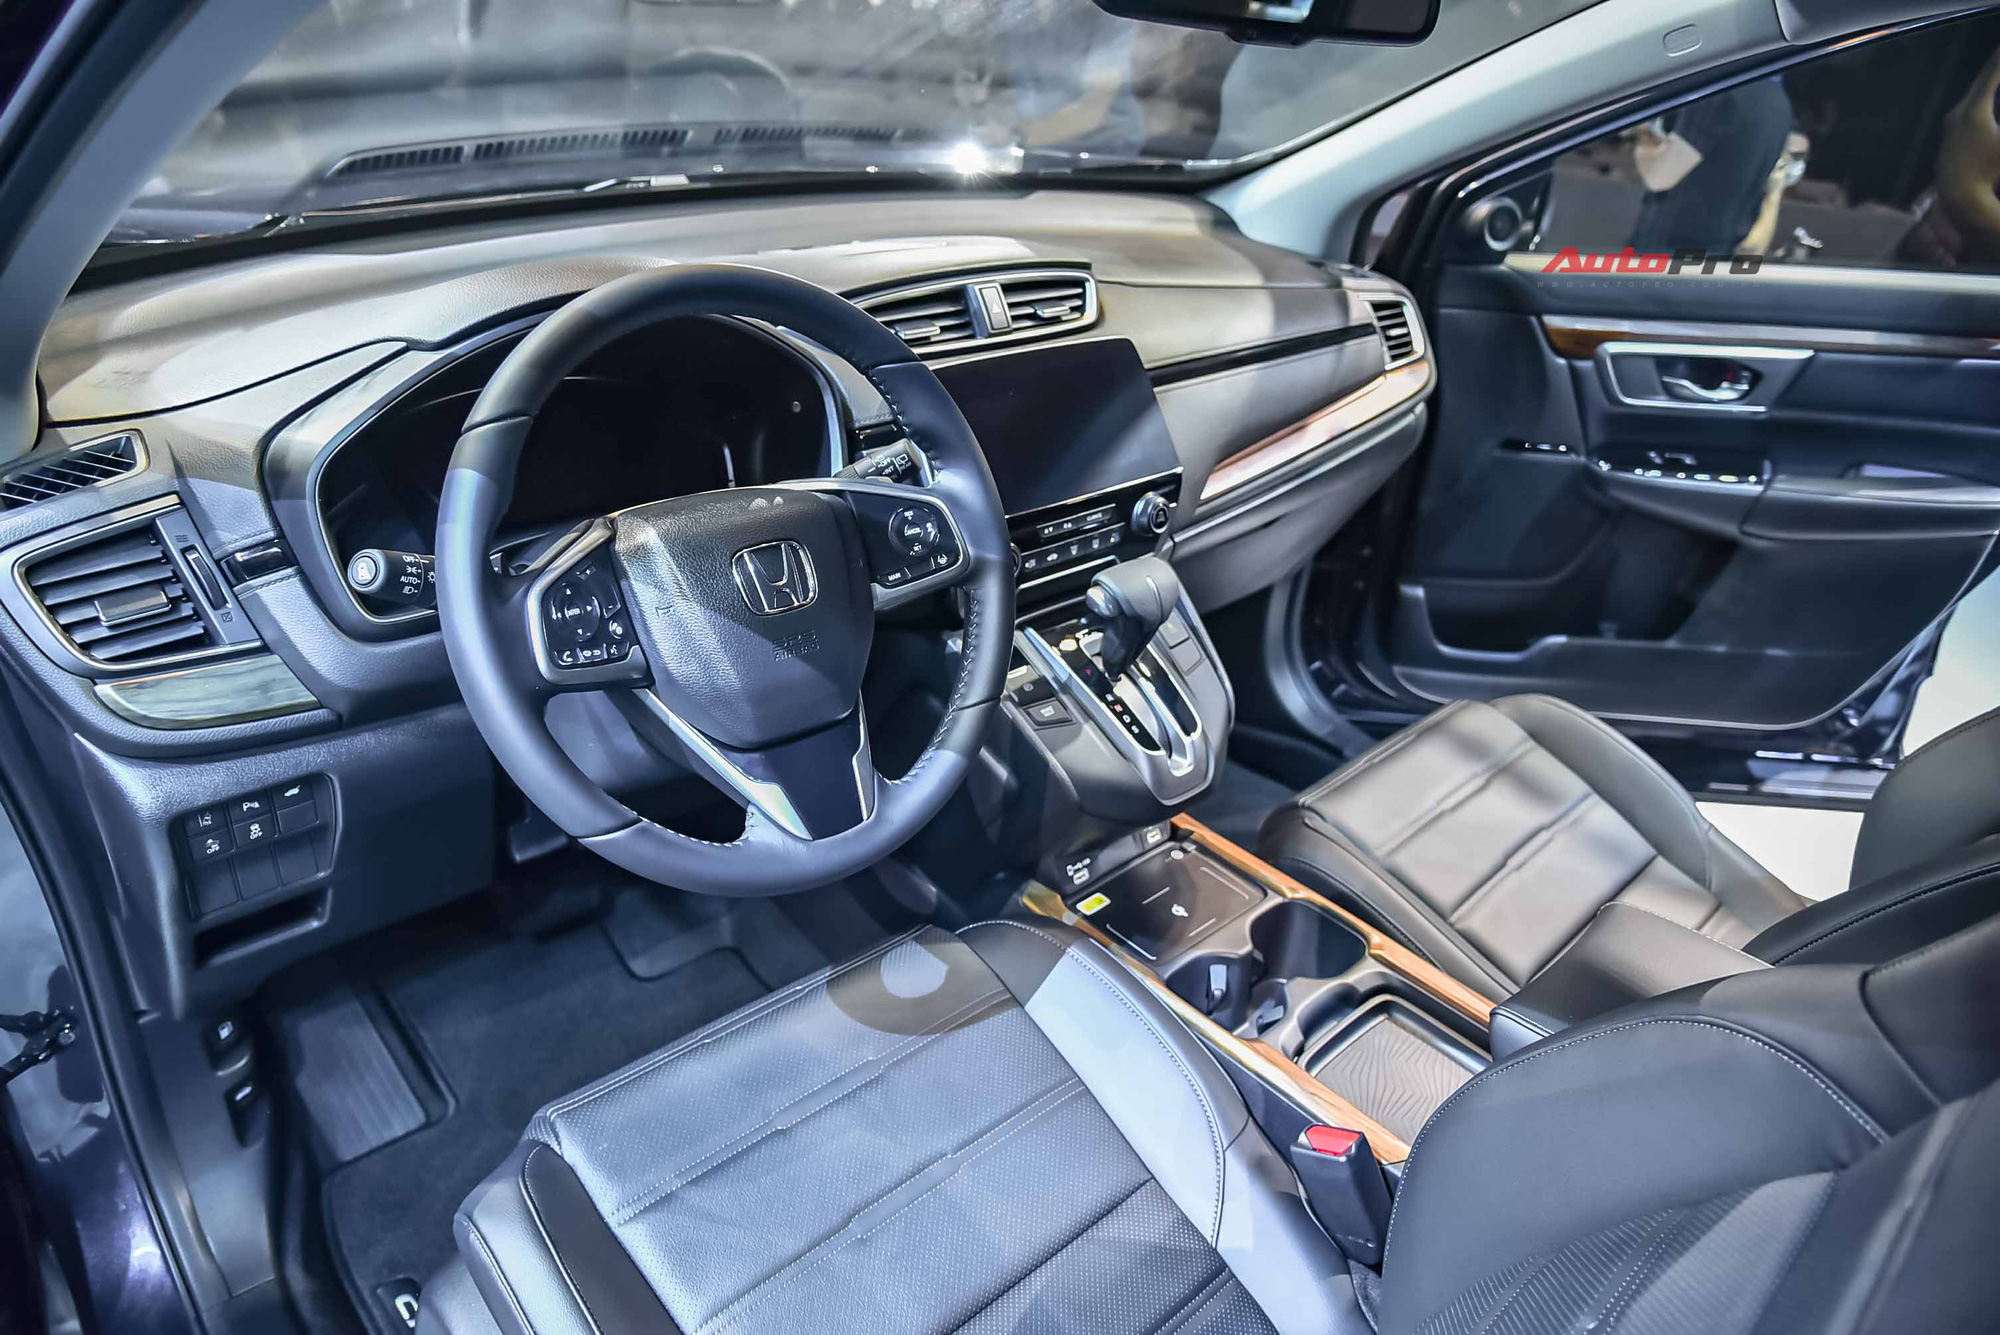 Honda CR-V 2020 lắp ráp giá từ 998 triệu đồng: Tiêu chuẩn hoá công nghệ an toàn khủng đấu Mazda CX-5 - Ảnh 6.